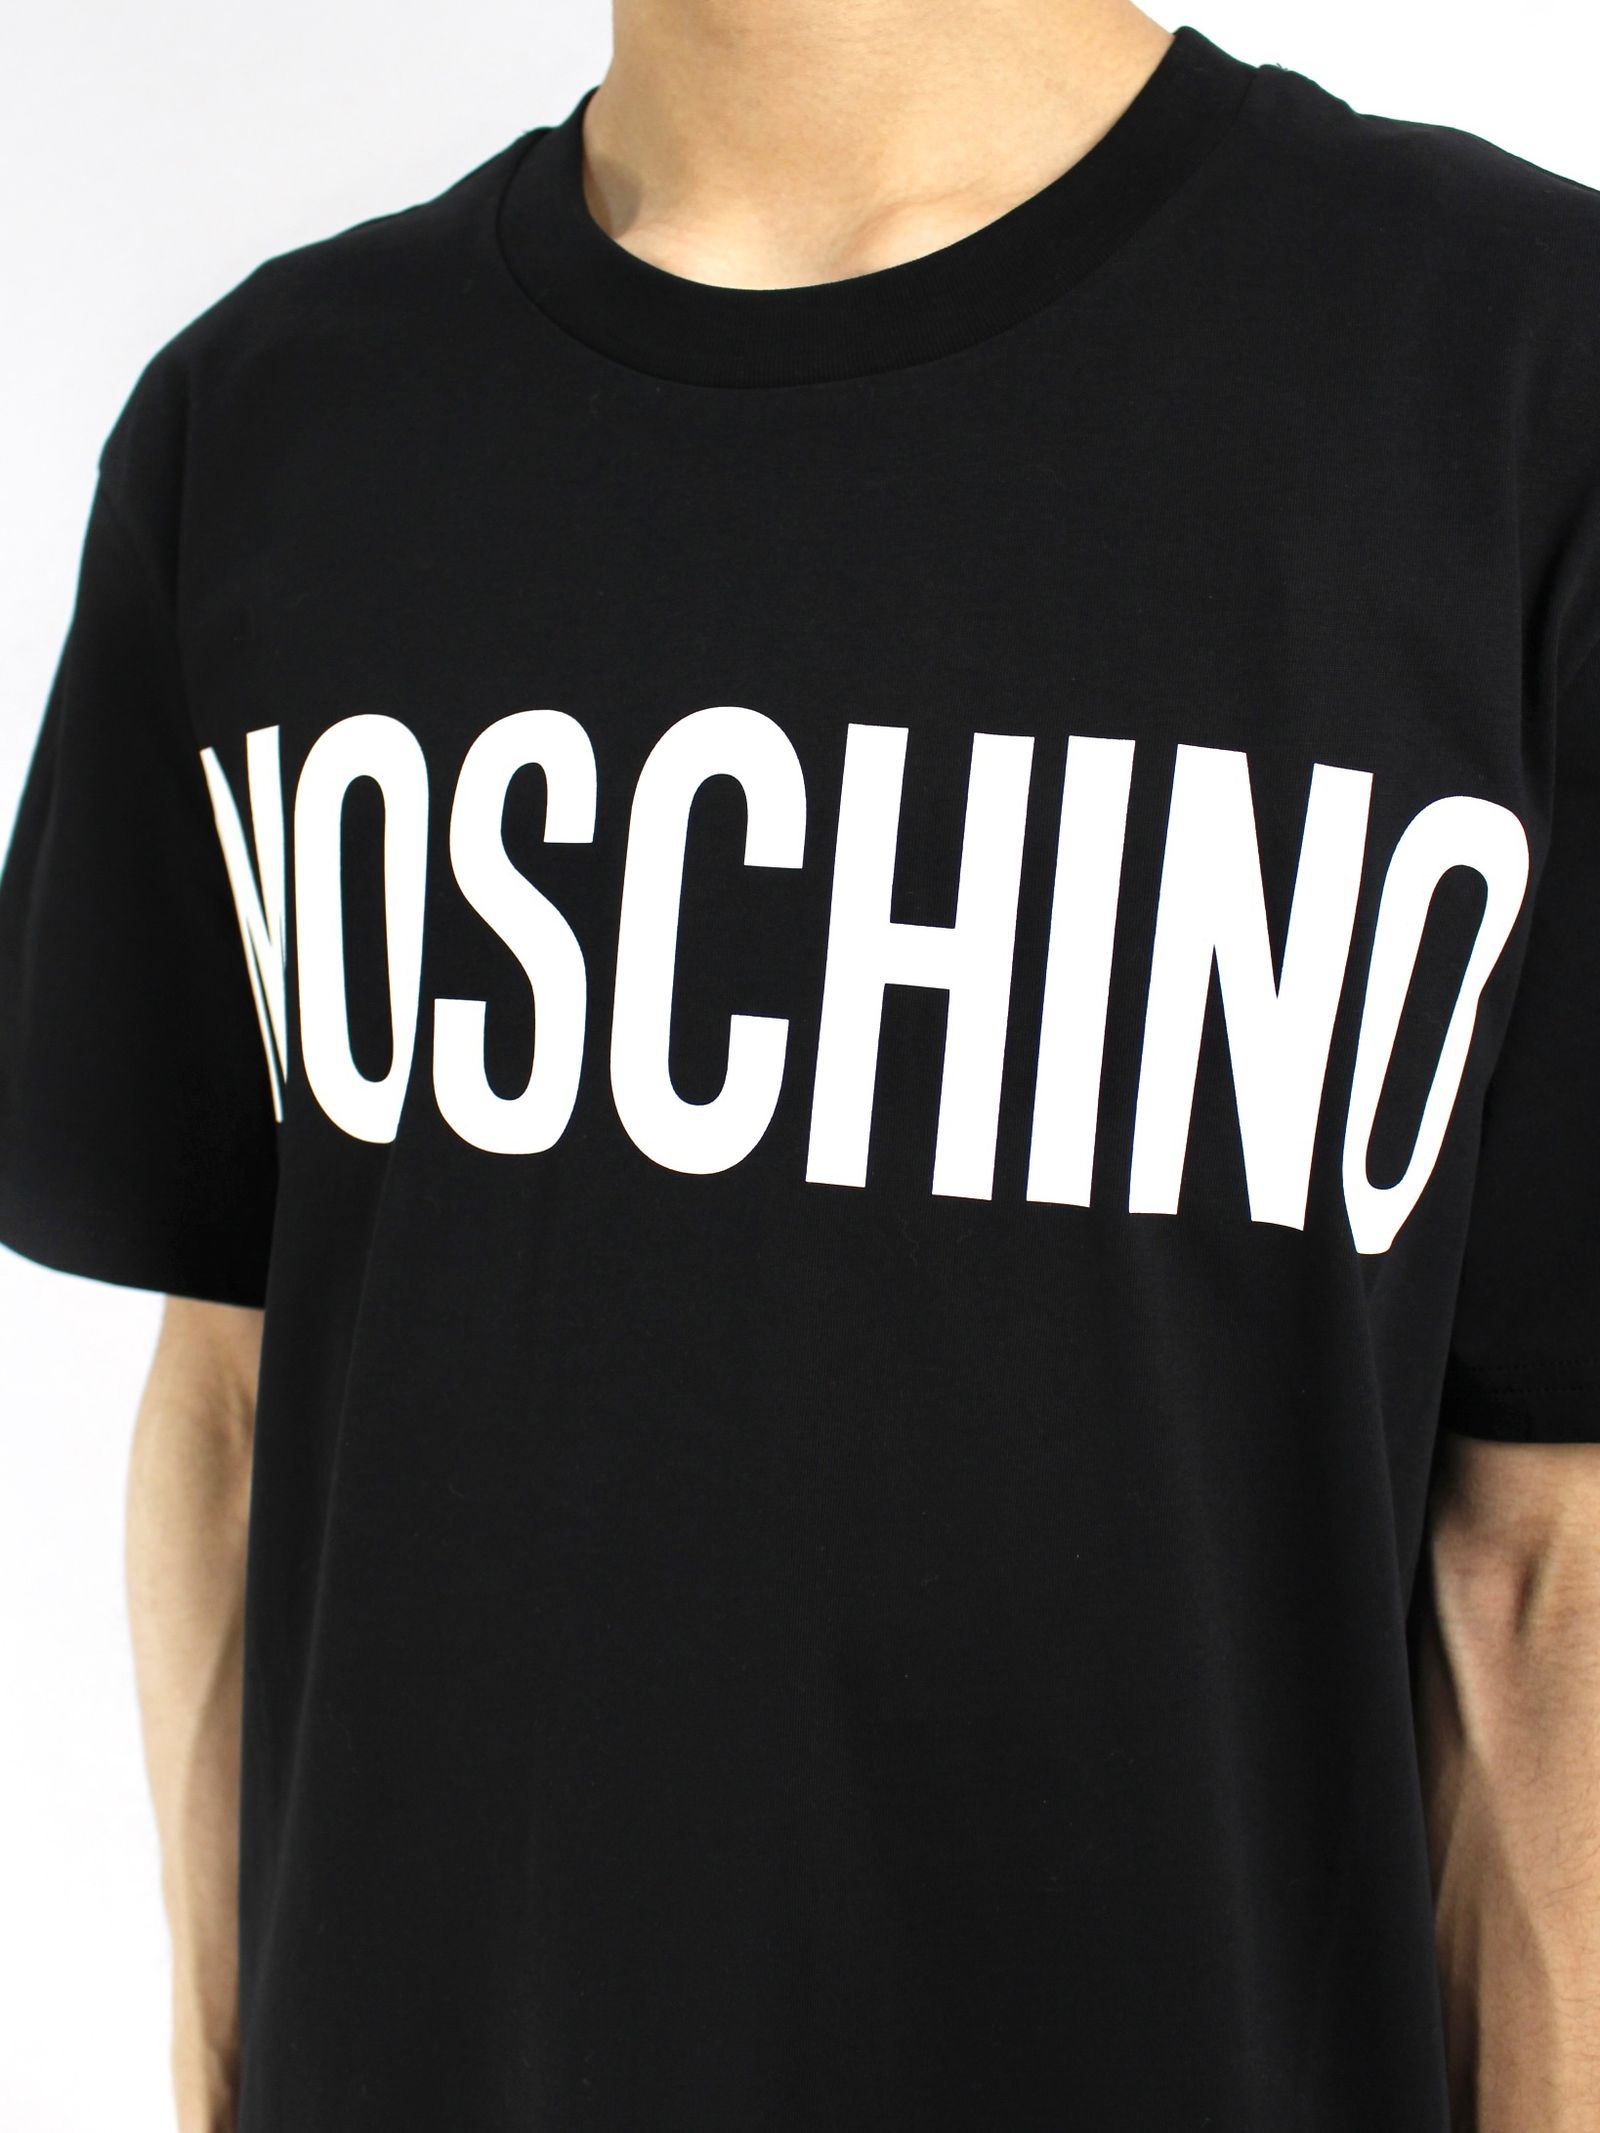 ロゴプリント 半袖Tシャツ カットソー / LOGO PRINT T-SHIRT / ブラック - 46(S) - ブラック